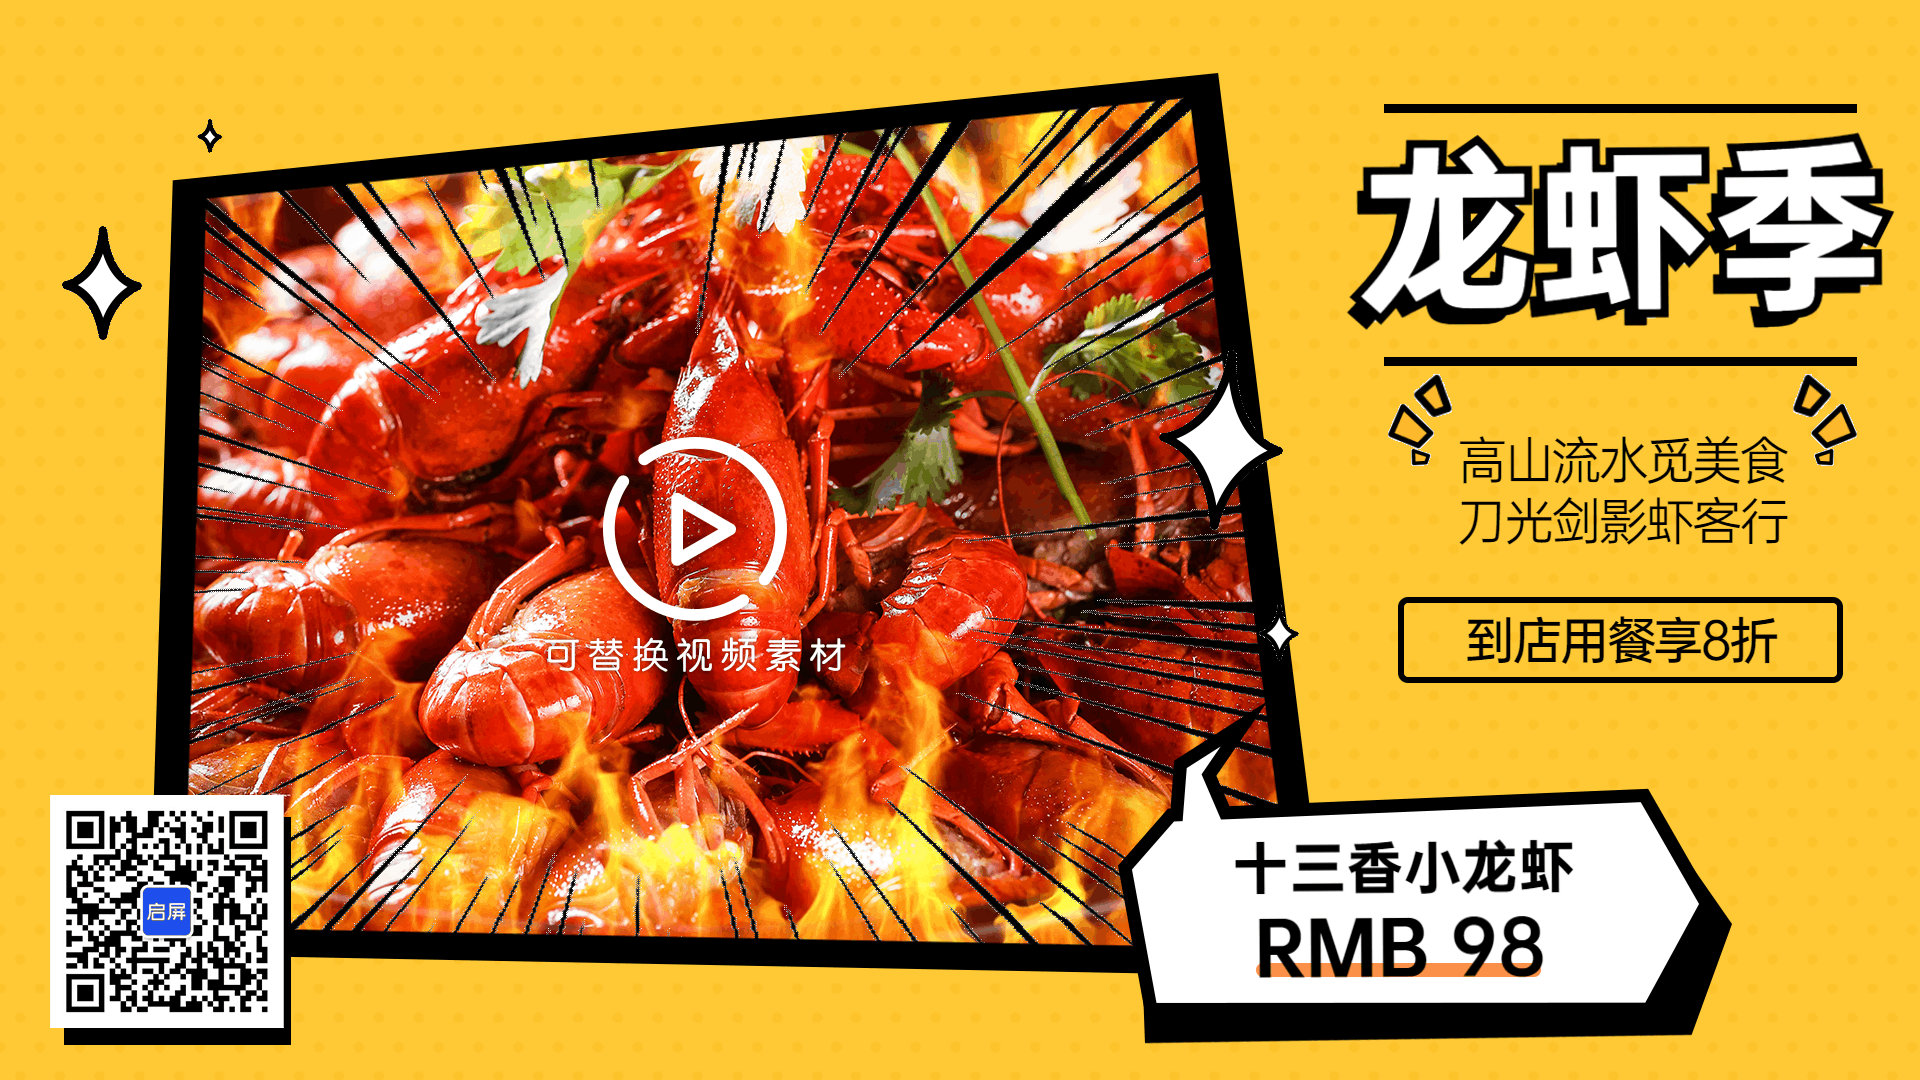 麻辣小龙虾促销商品推荐视频海报预览效果